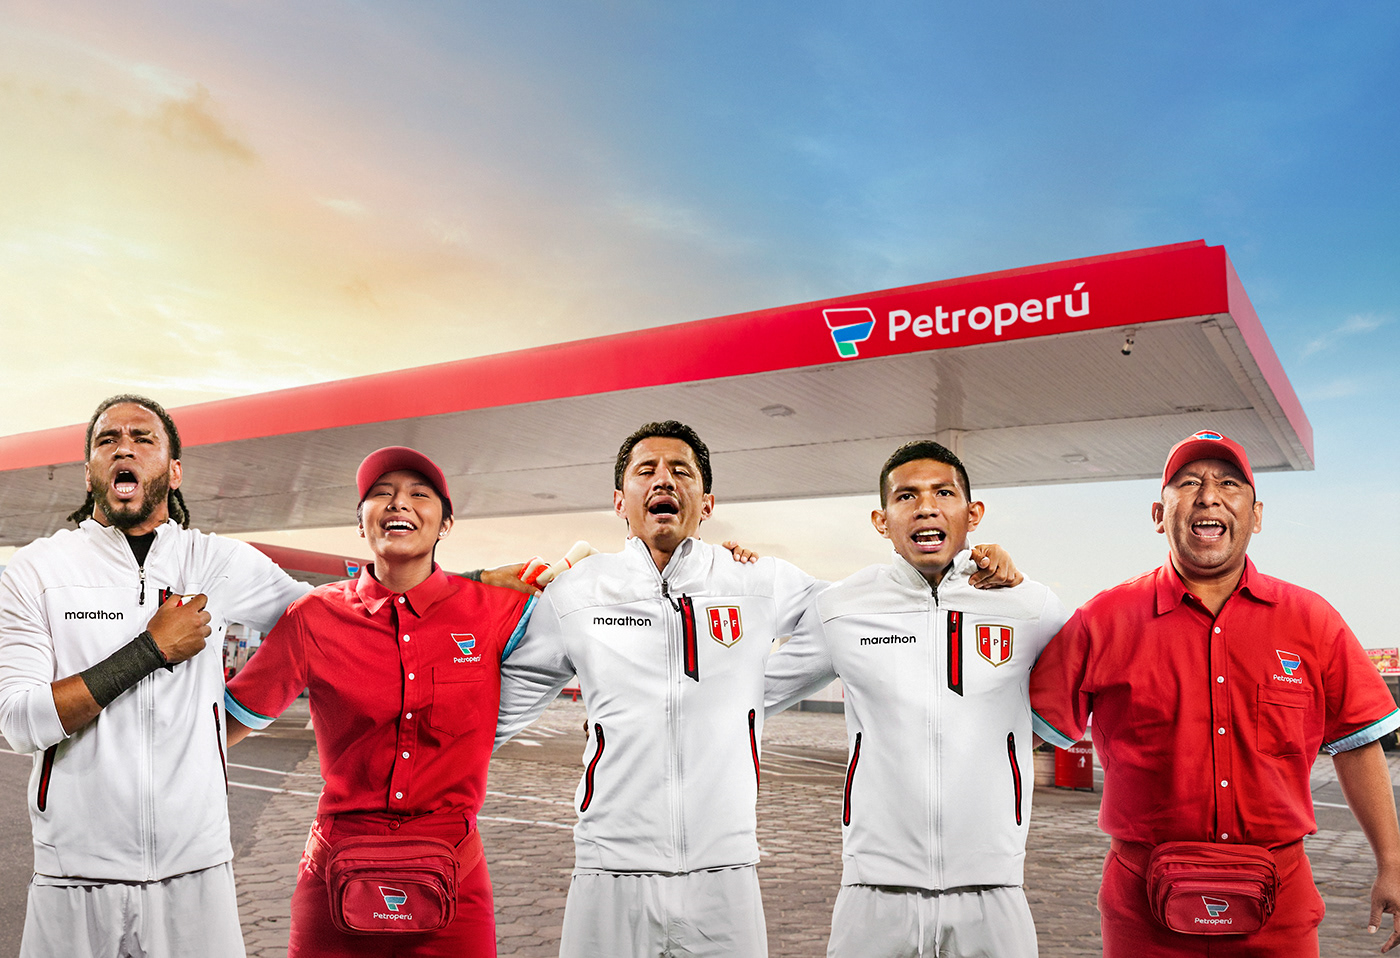 ads Advertising  designer Futbol peru petroperú Social media post sport